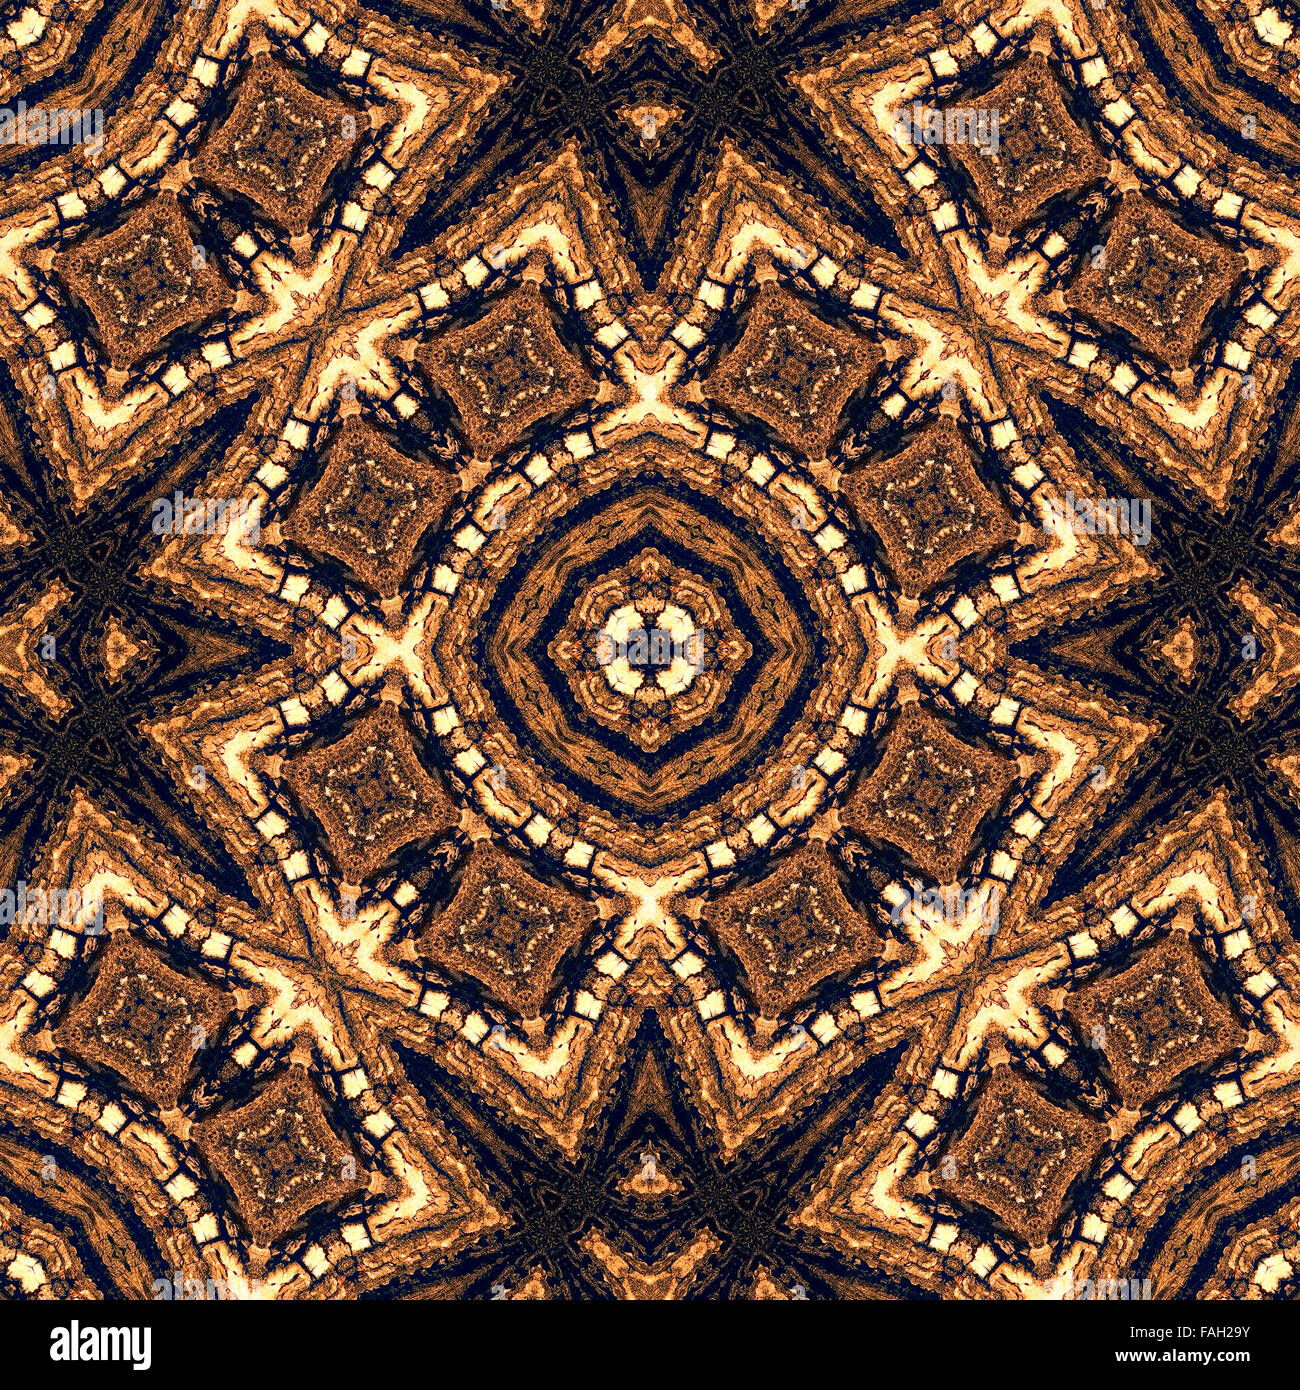 L'écorce des arbres seamless pattern abstract background illustration, dans des tons marron. Motif naturel. Banque D'Images